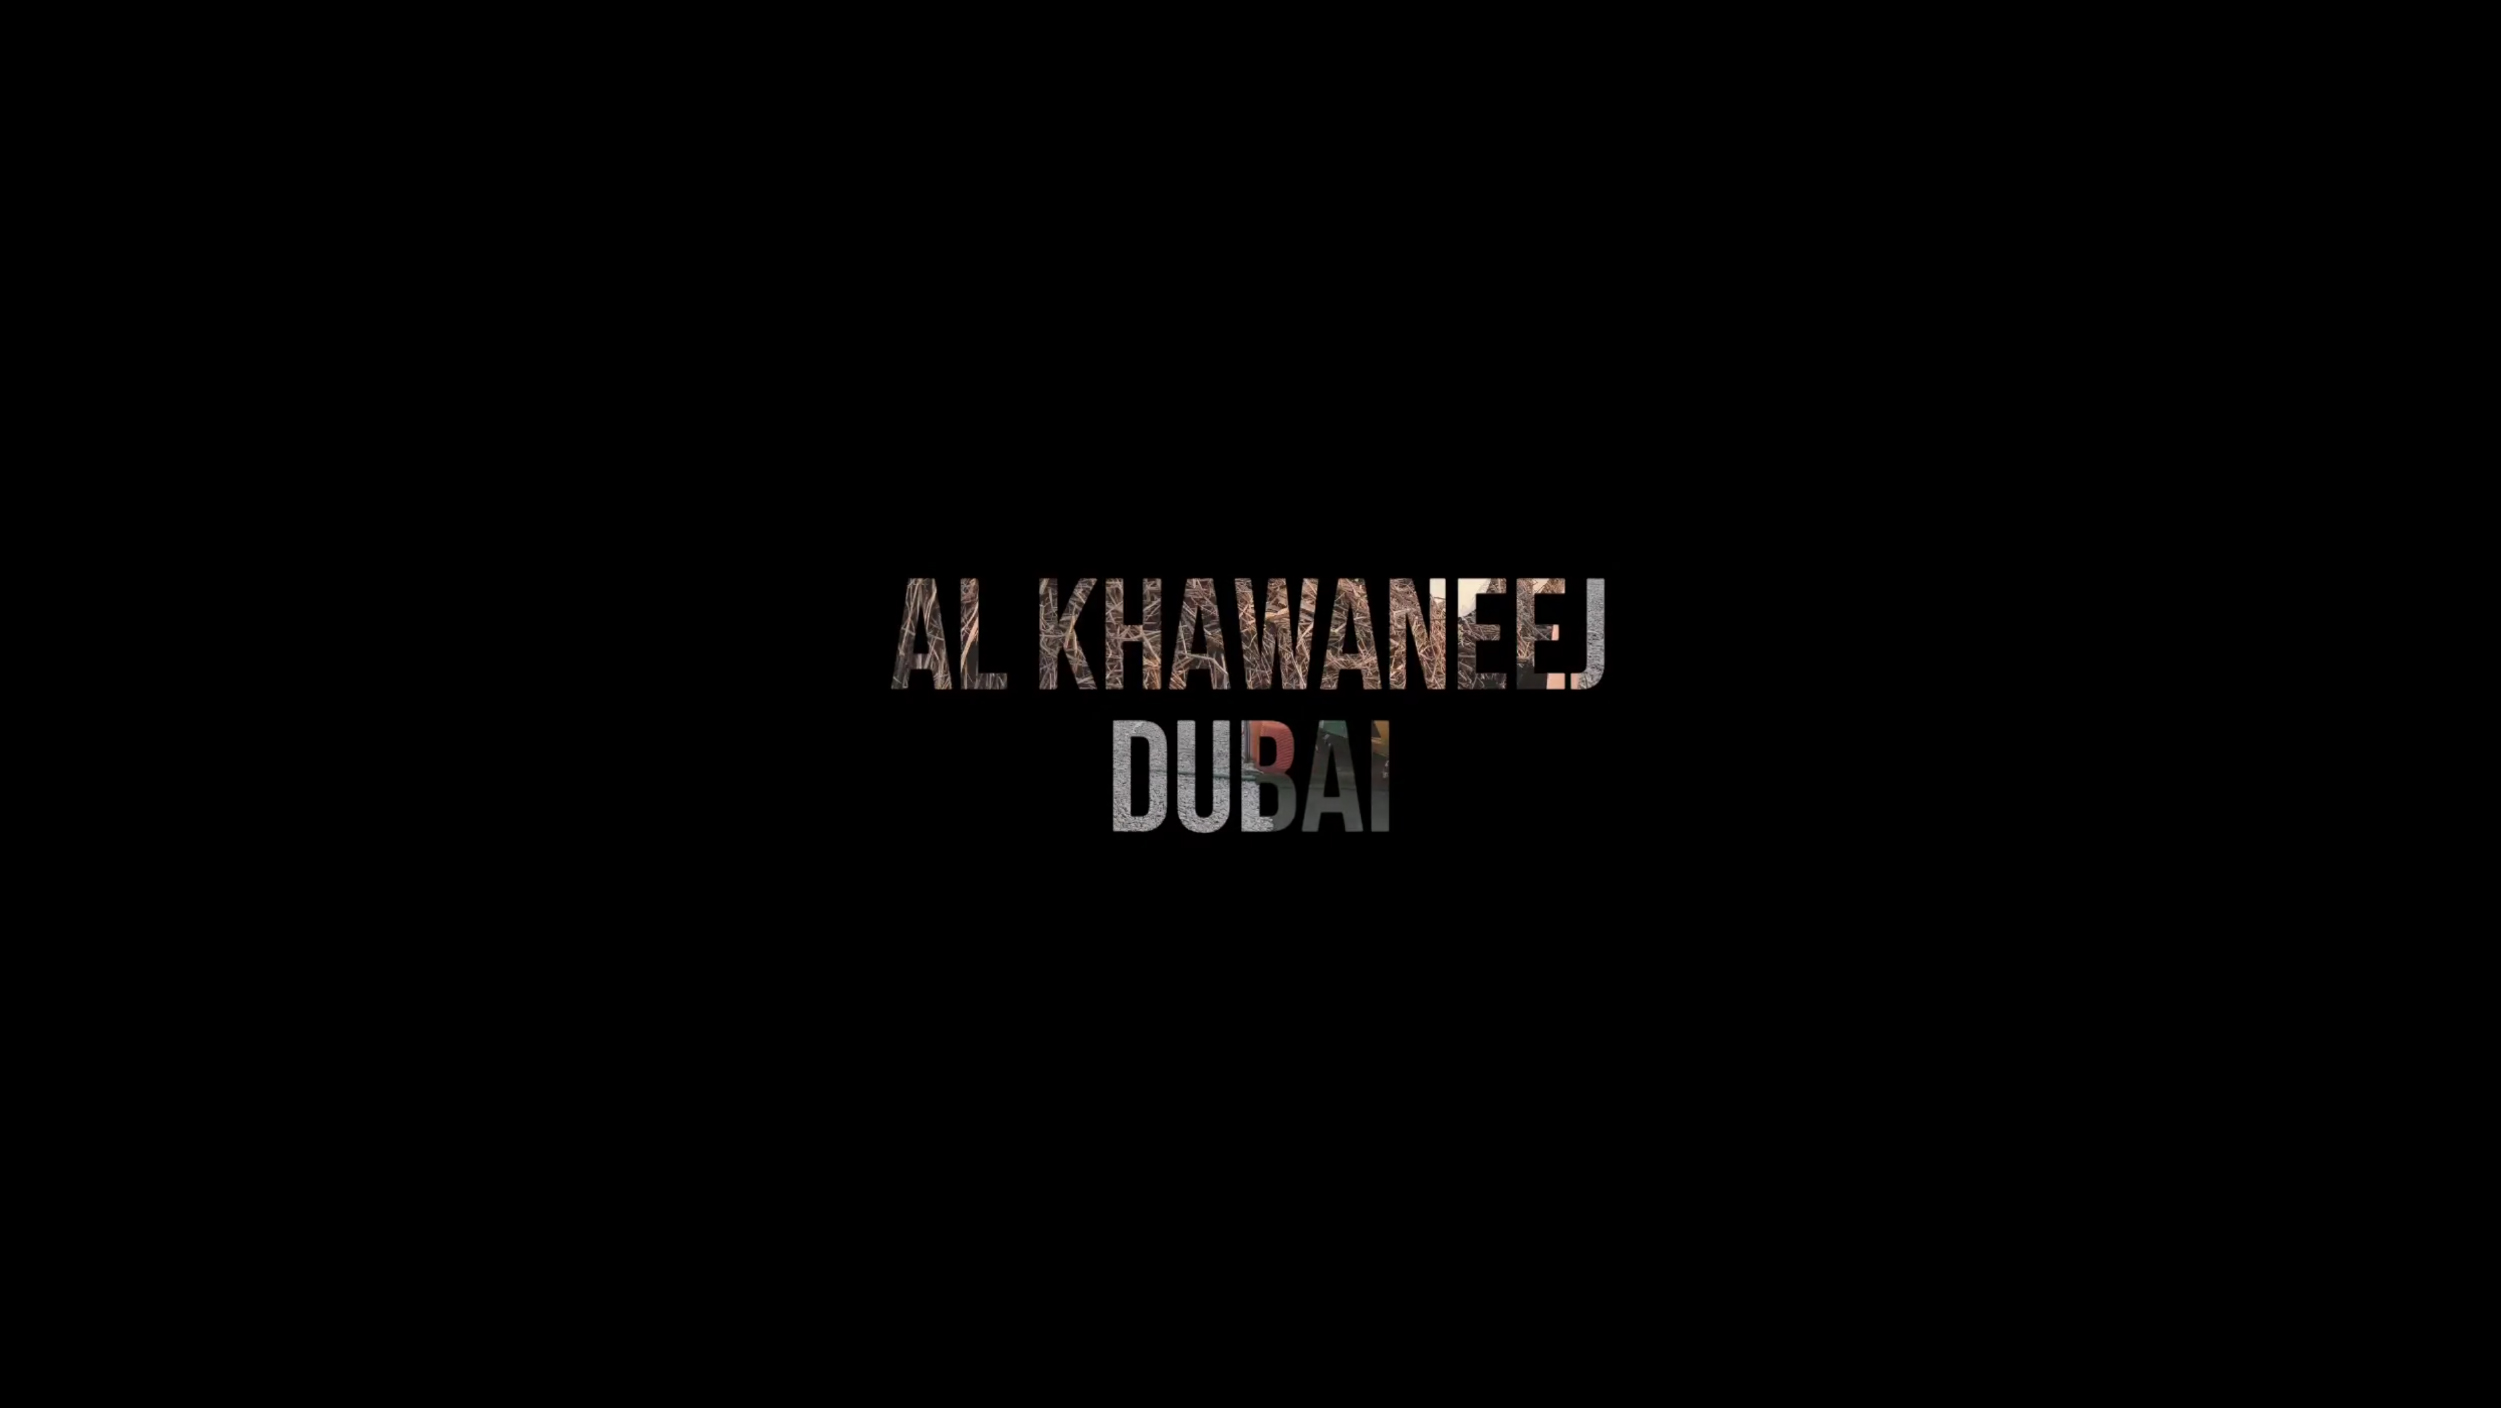 Al Khawaneej Dubai